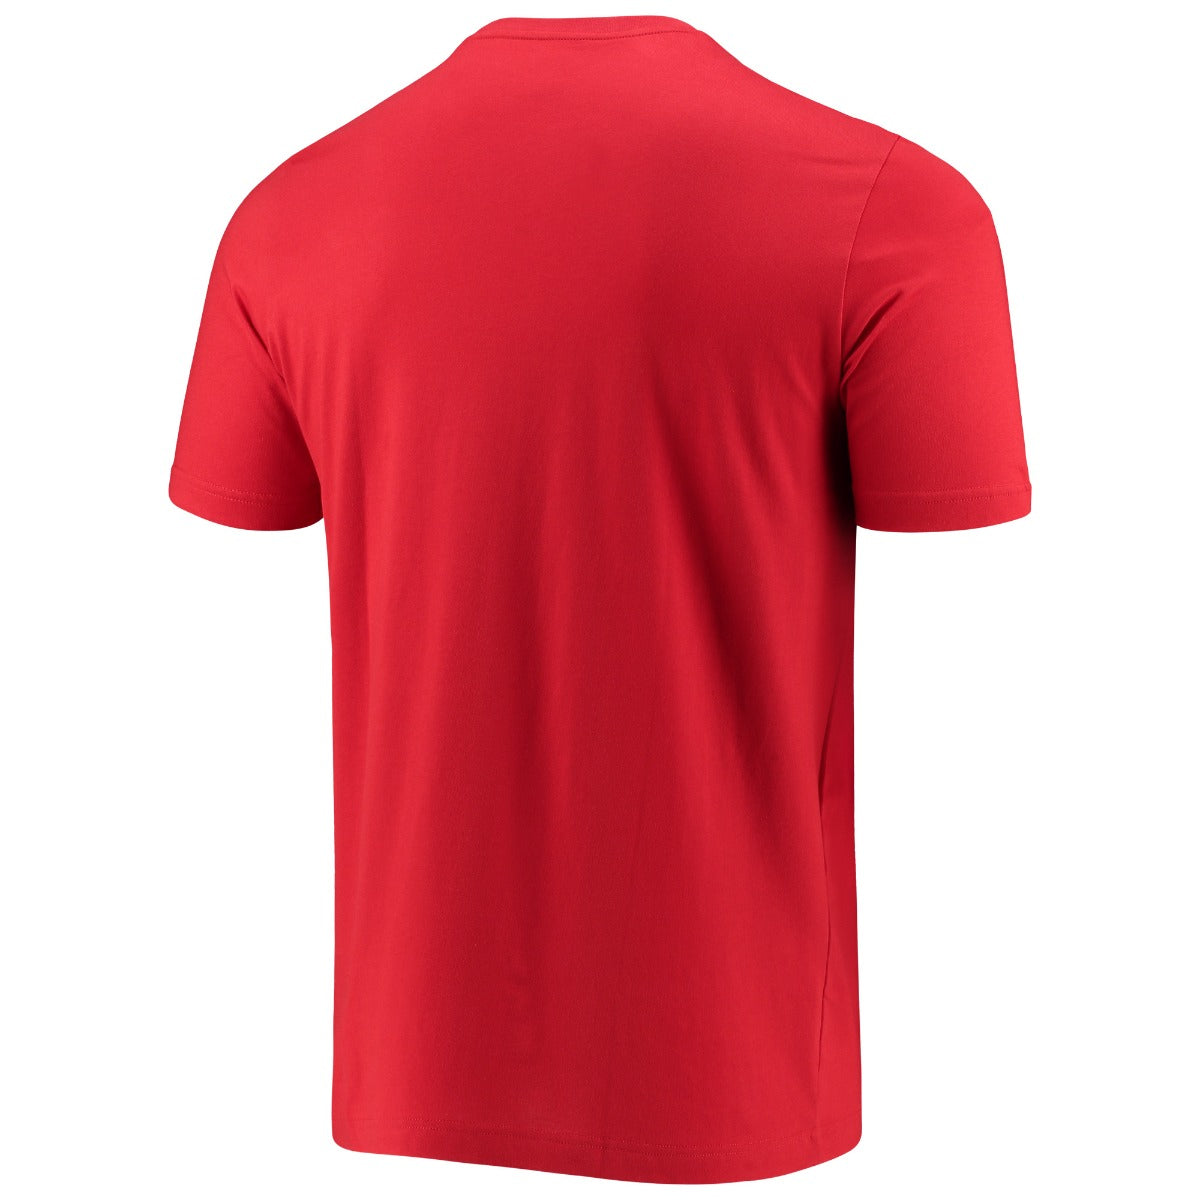 Adidas 2021-22 Bayern Munich Tee - Red (Back)